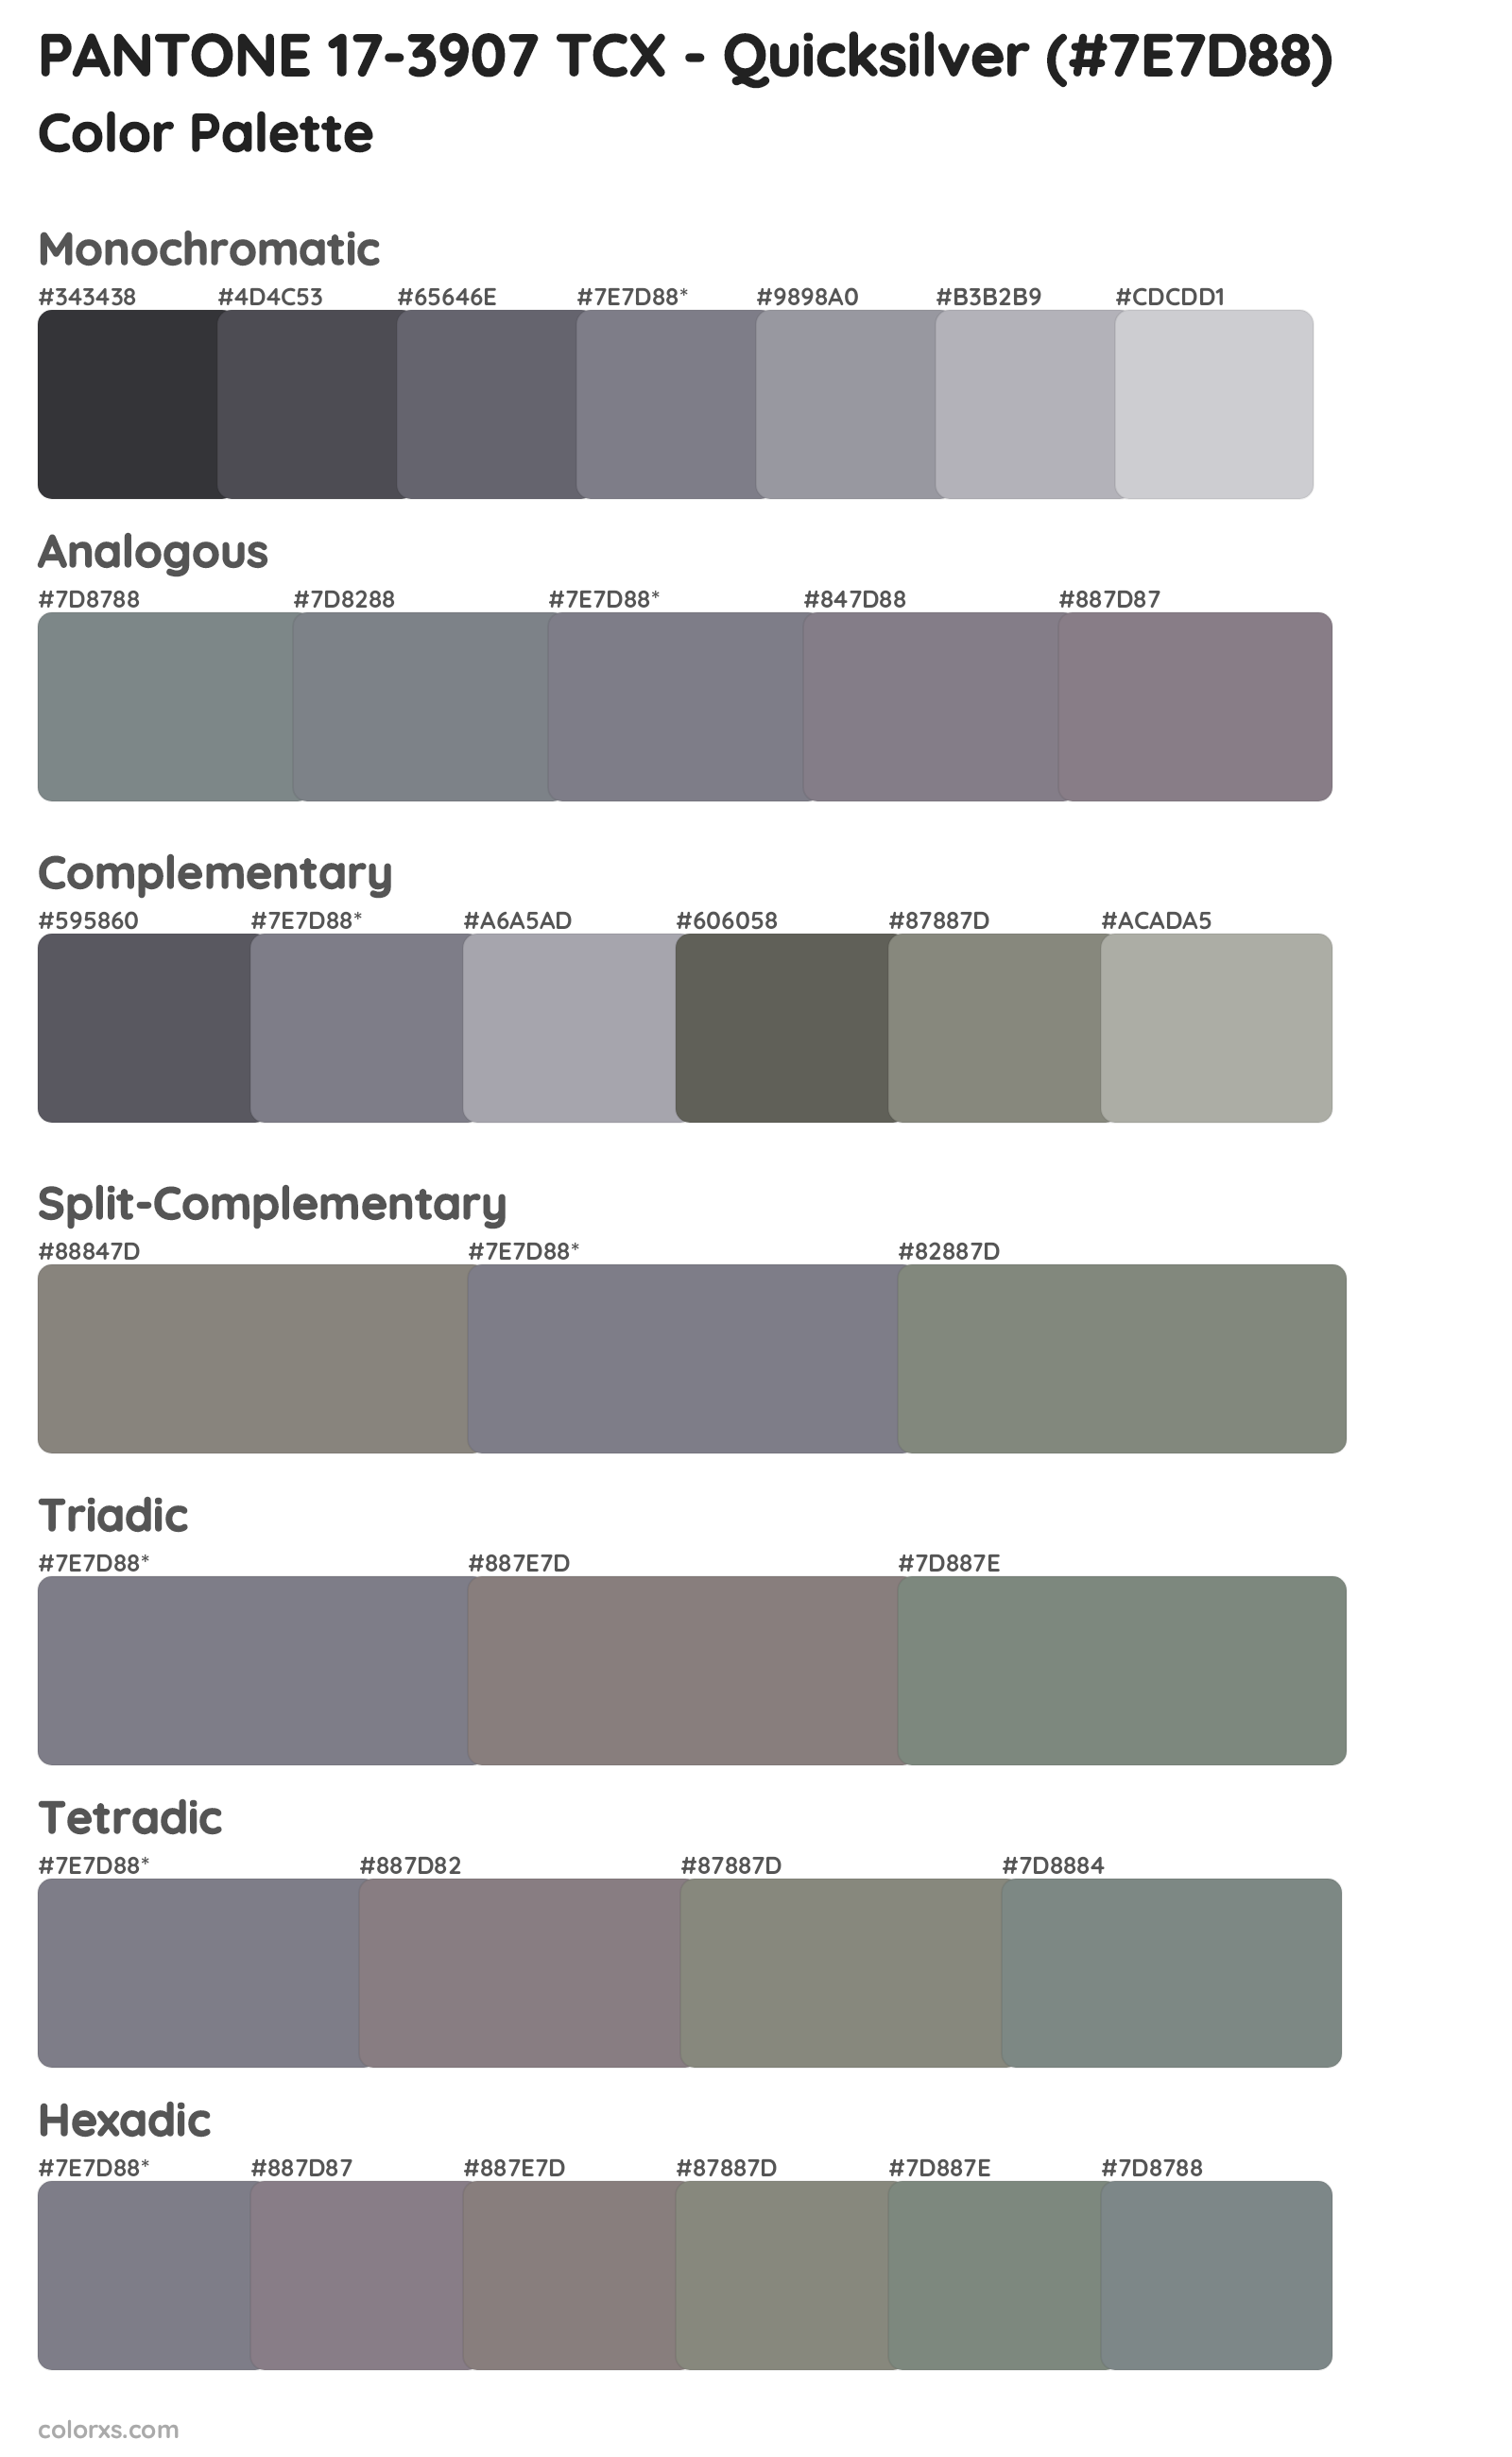 PANTONE 17-3907 TCX - Quicksilver Color Scheme Palettes